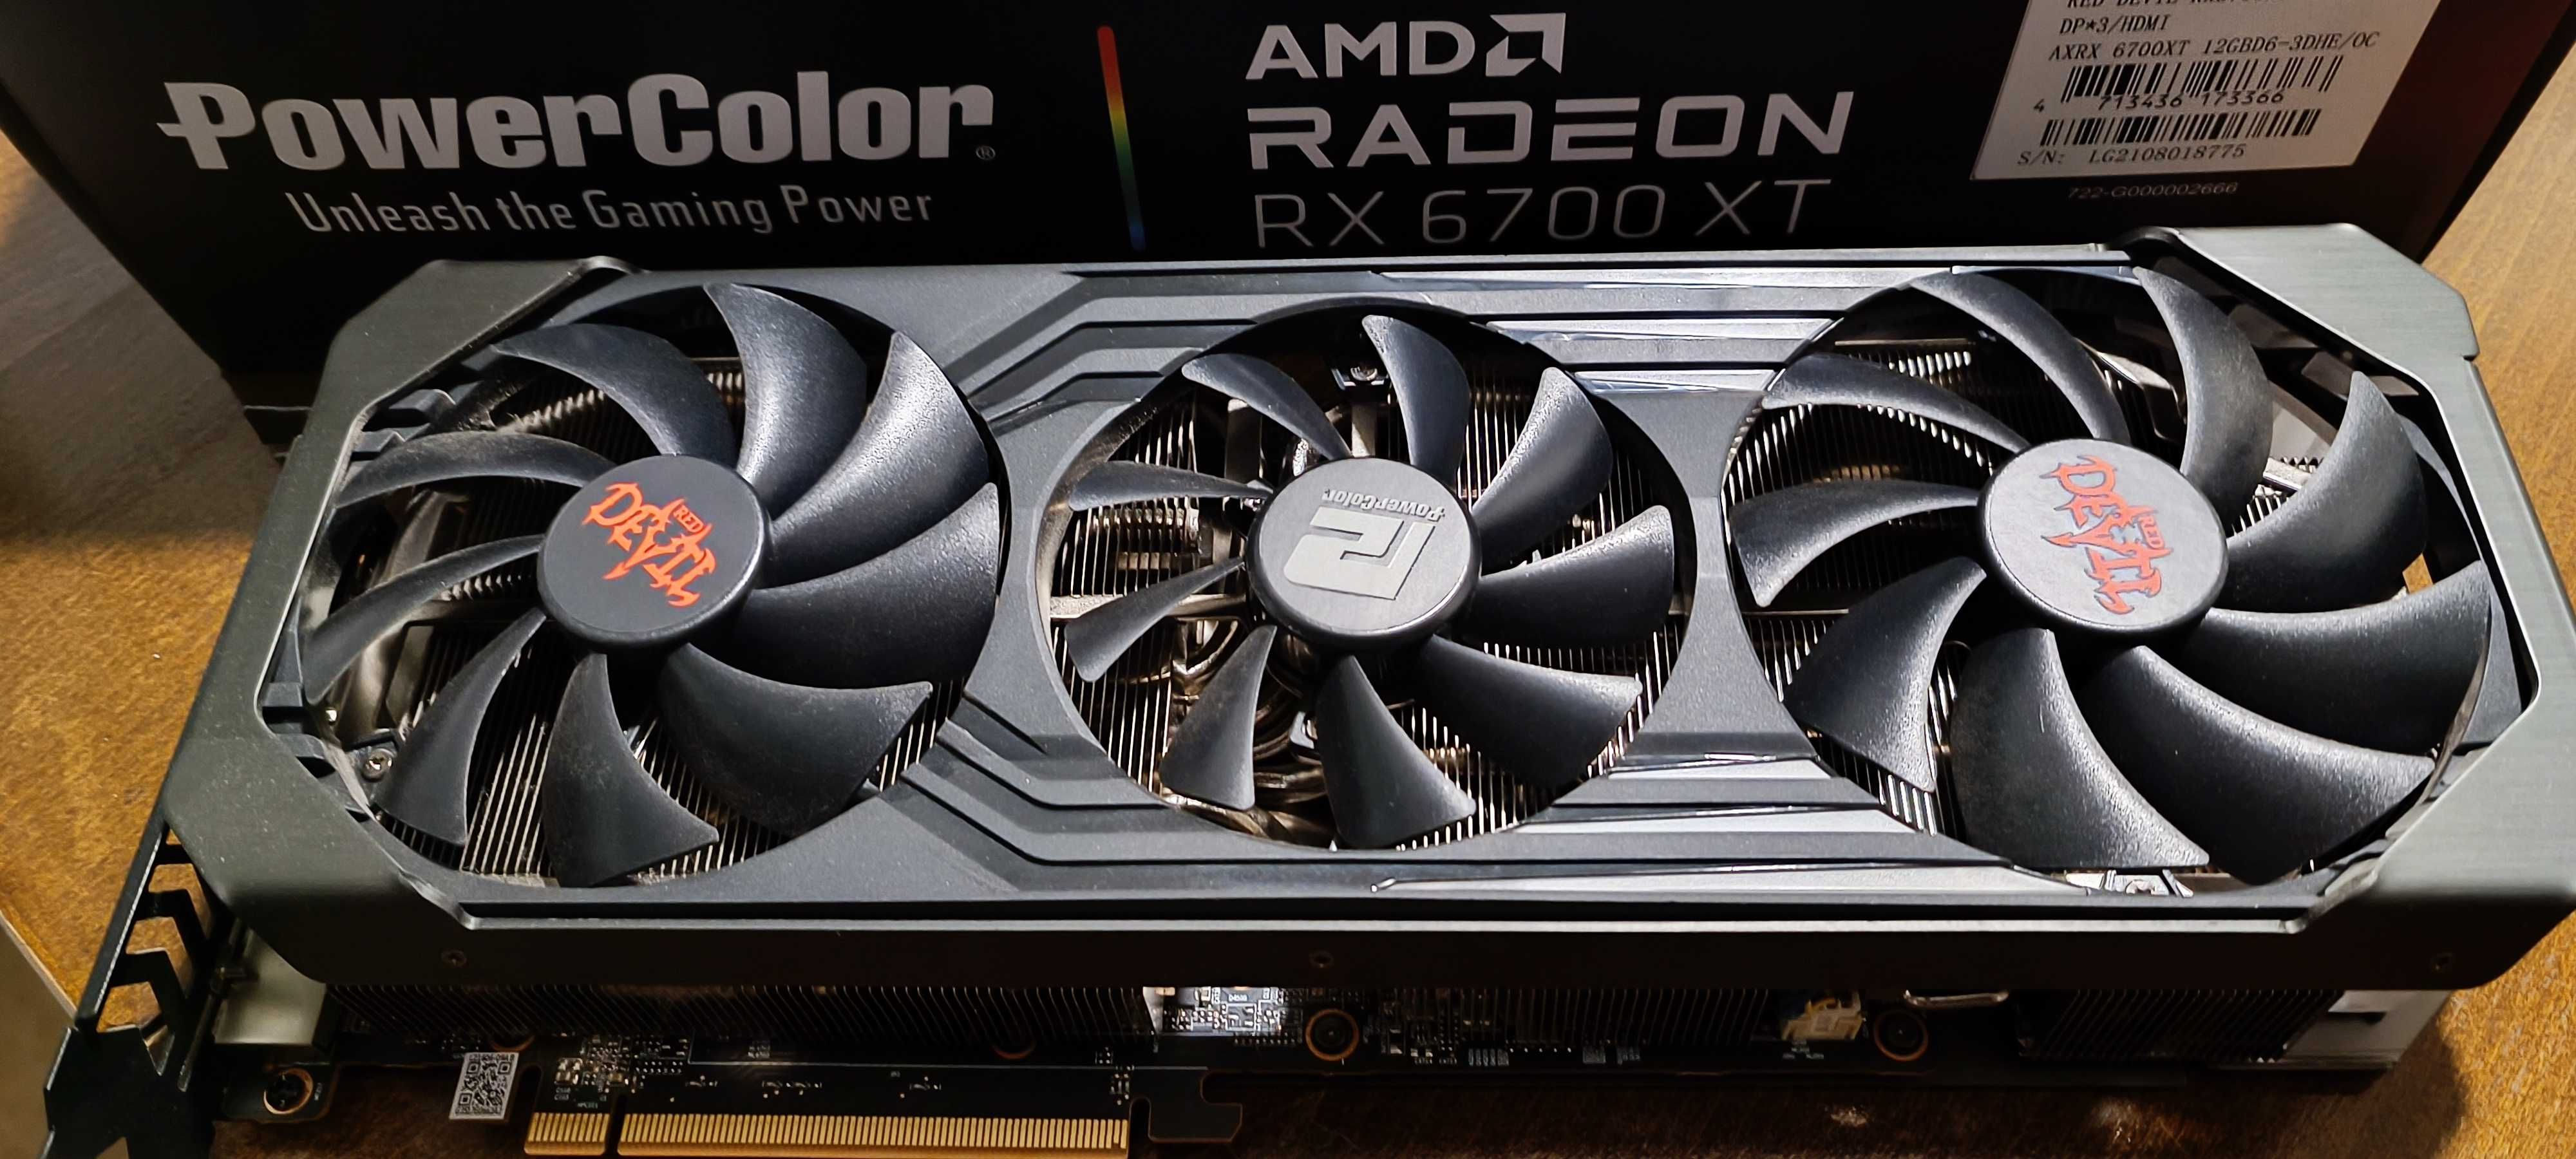 Видеокарта PowerColor RX 6700XT AMD Radeon 12gb GDDR6